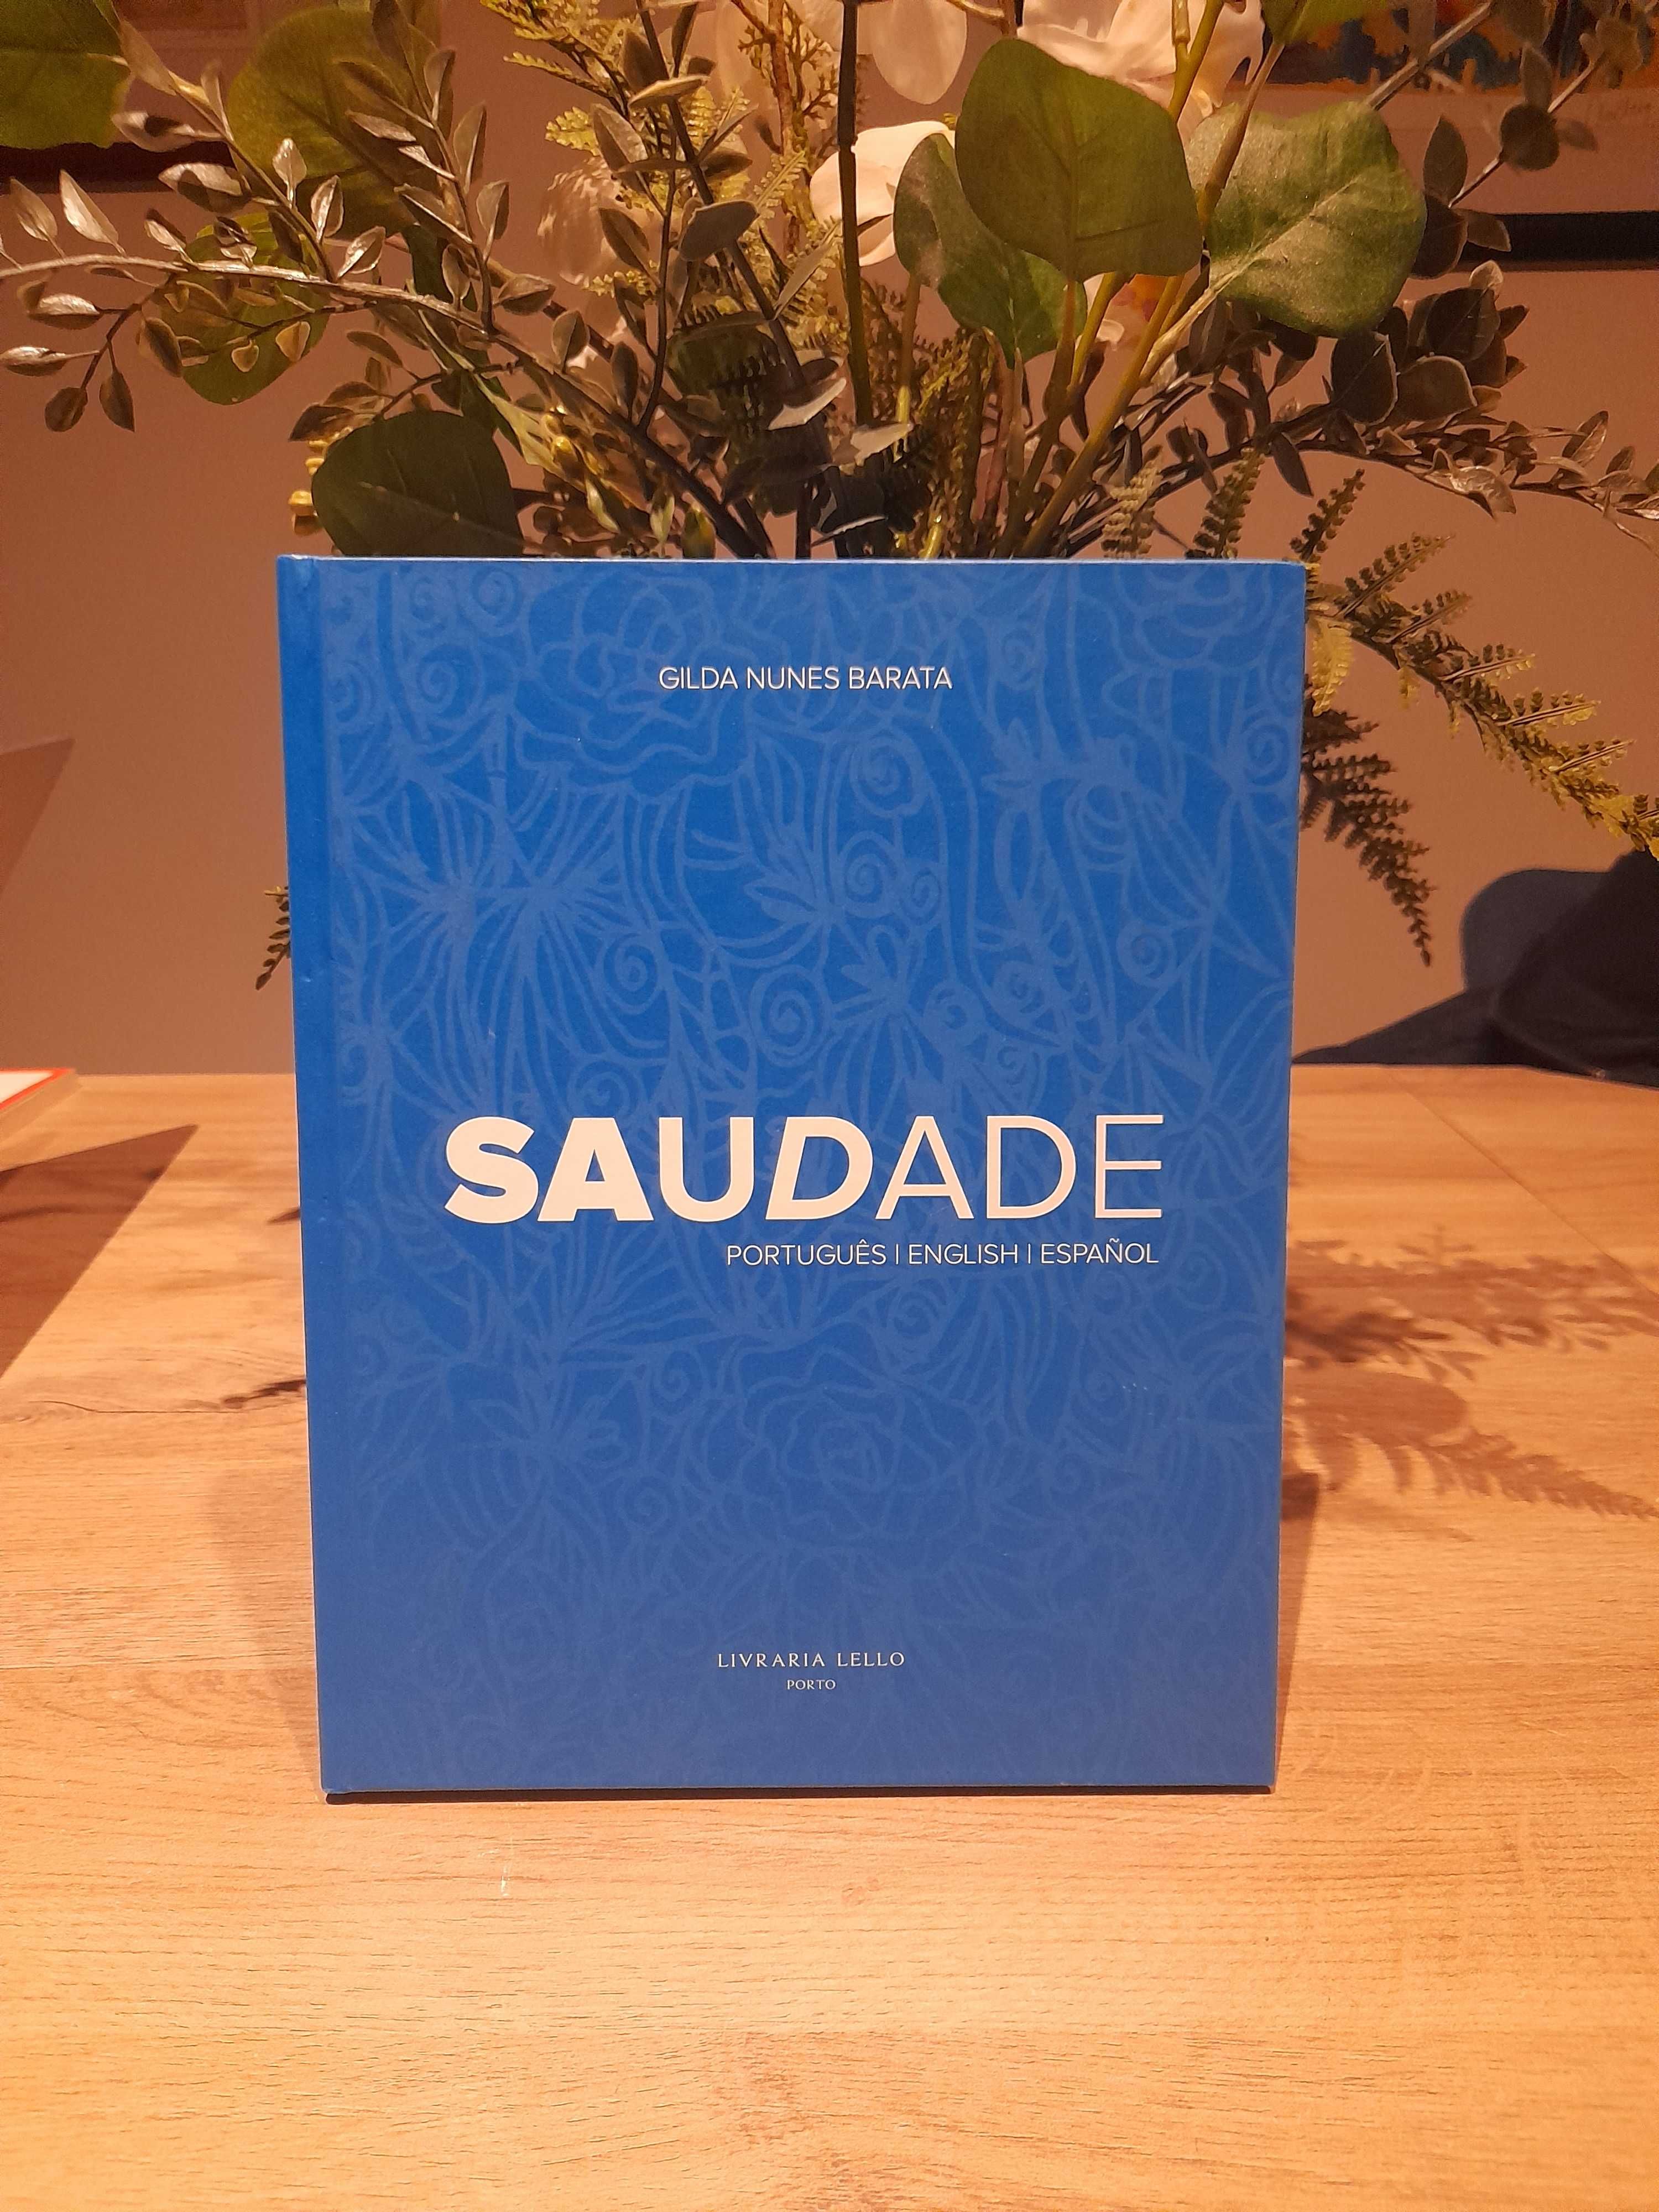 Livro Saudade - versão trilingue (português, inglês e espanhol).